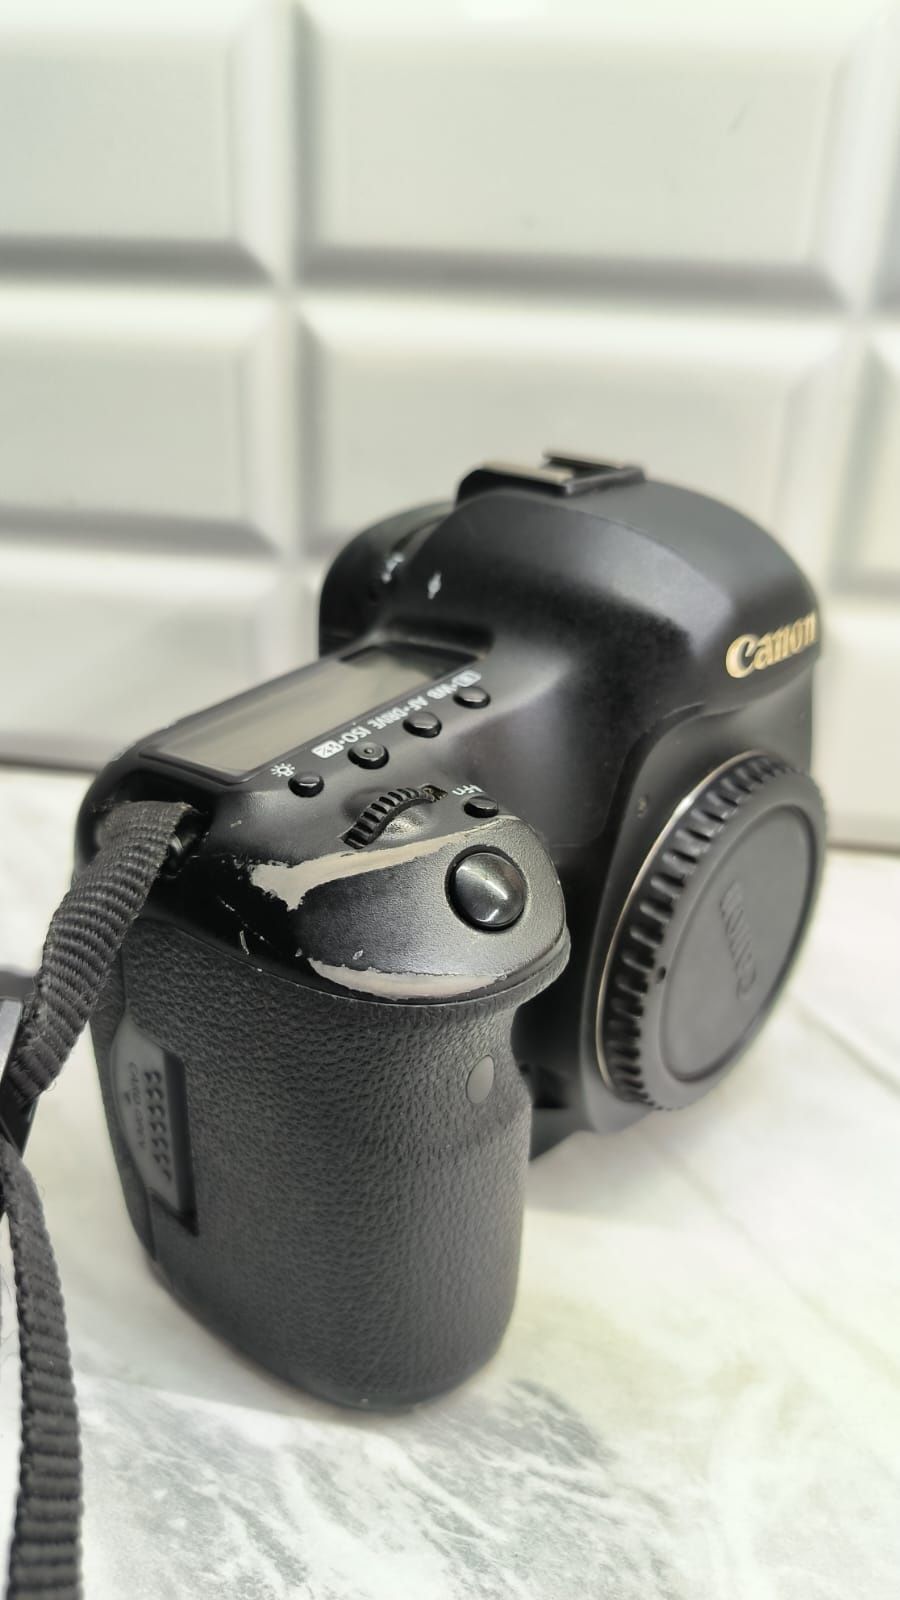 Canon EOS 5D Mark lll body